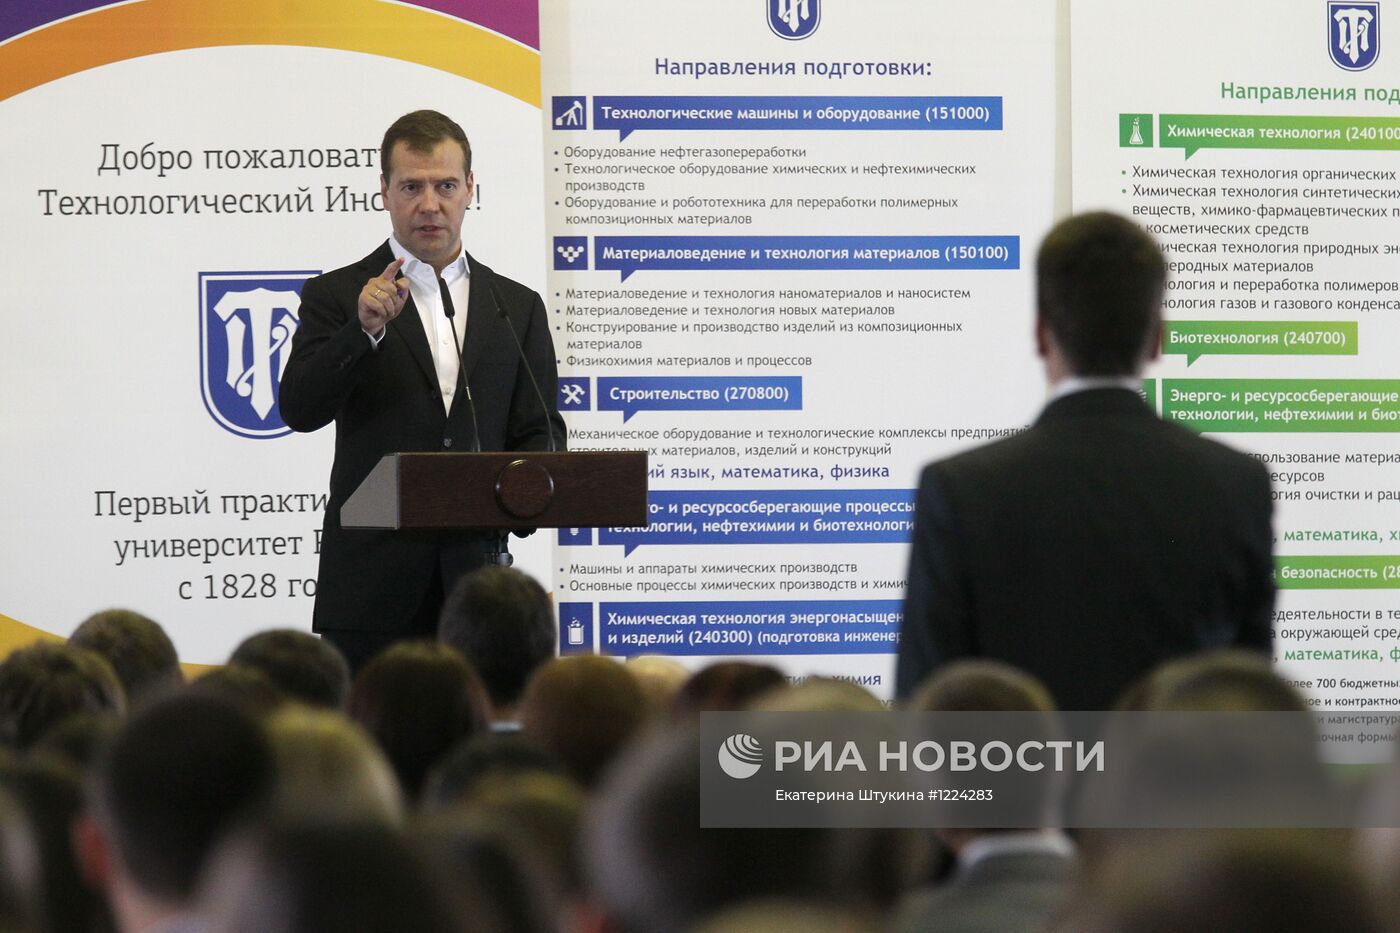 Рабочая поездка Д. Медведева в Санкт-Петербург